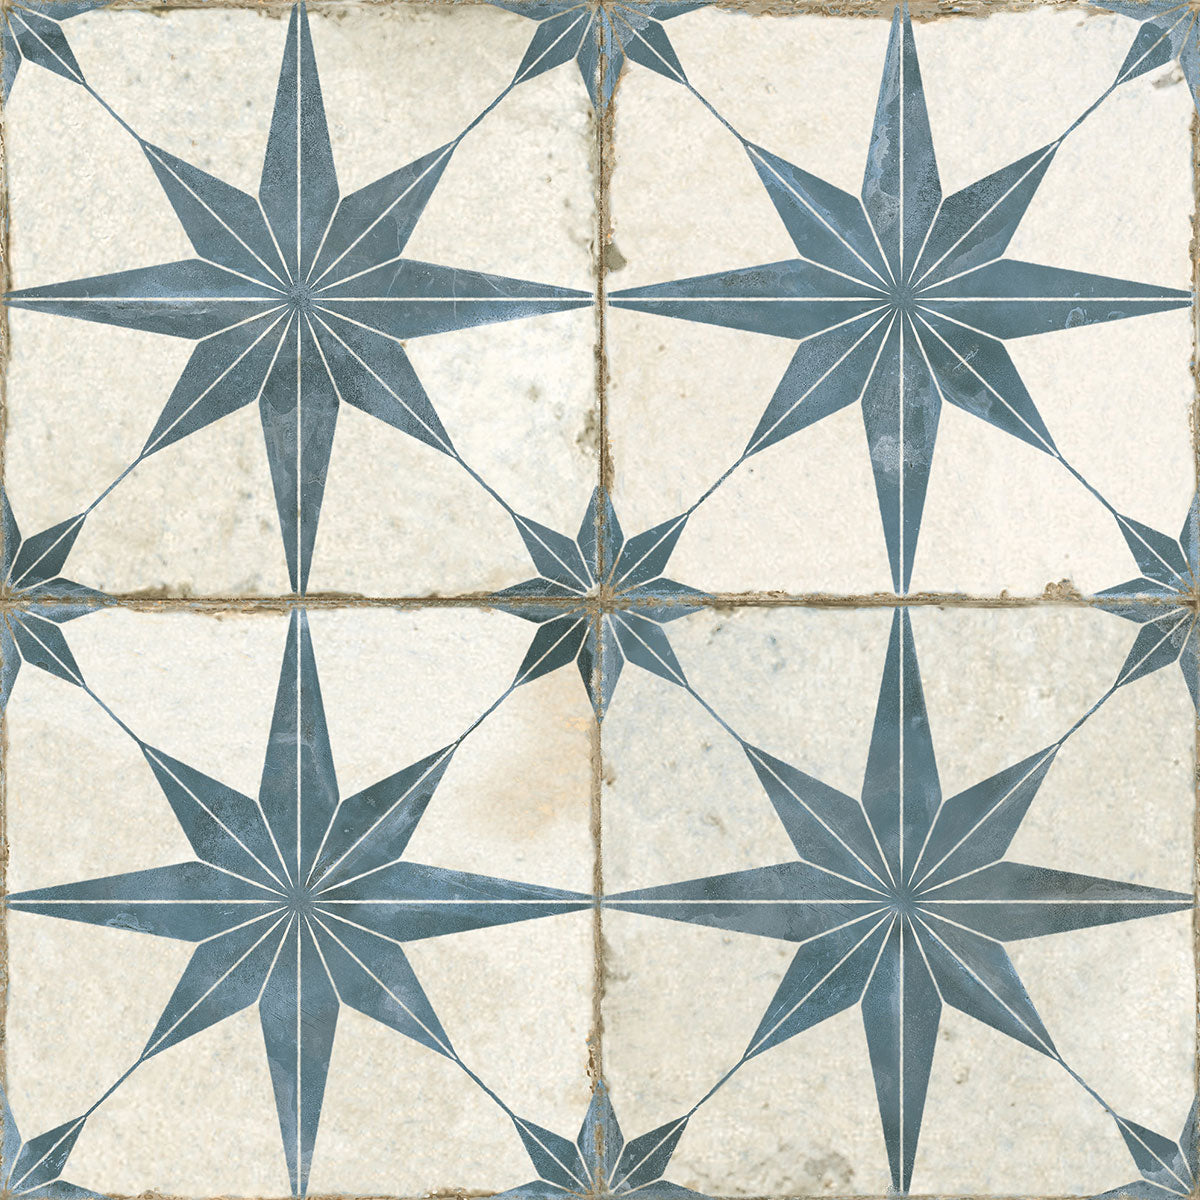 FS Star Blue Tile Matt 45 x 45cm